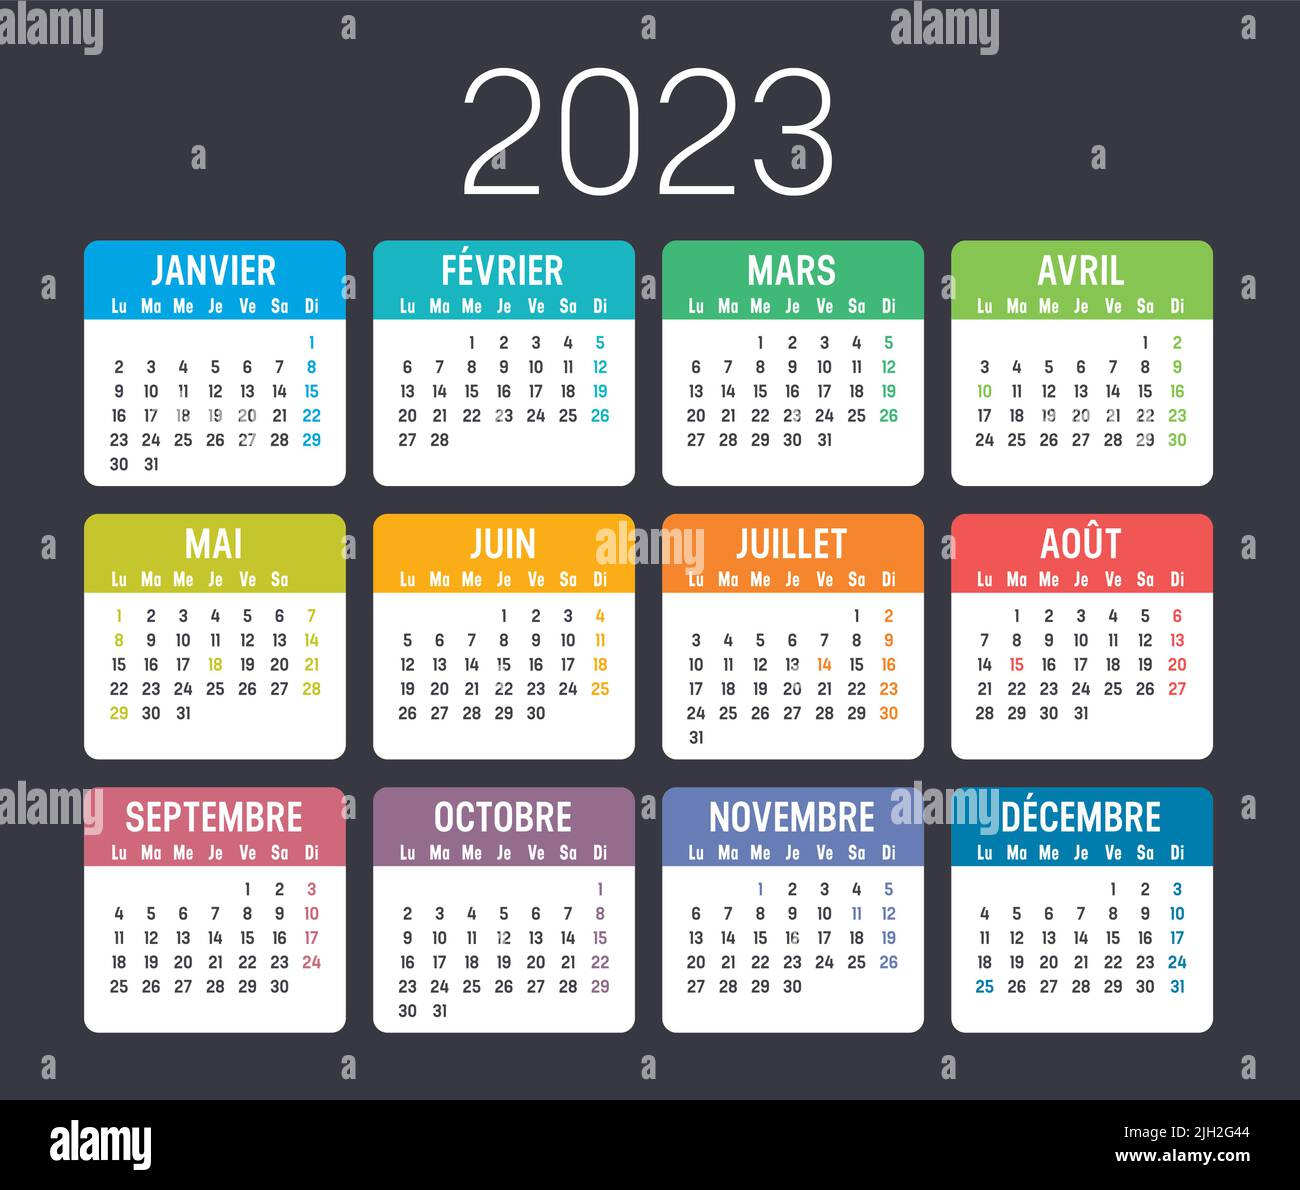 Calendario colorato dell'anno 2023, in lingua francese, isolato su sfondo scuro Illustrazione Vettoriale